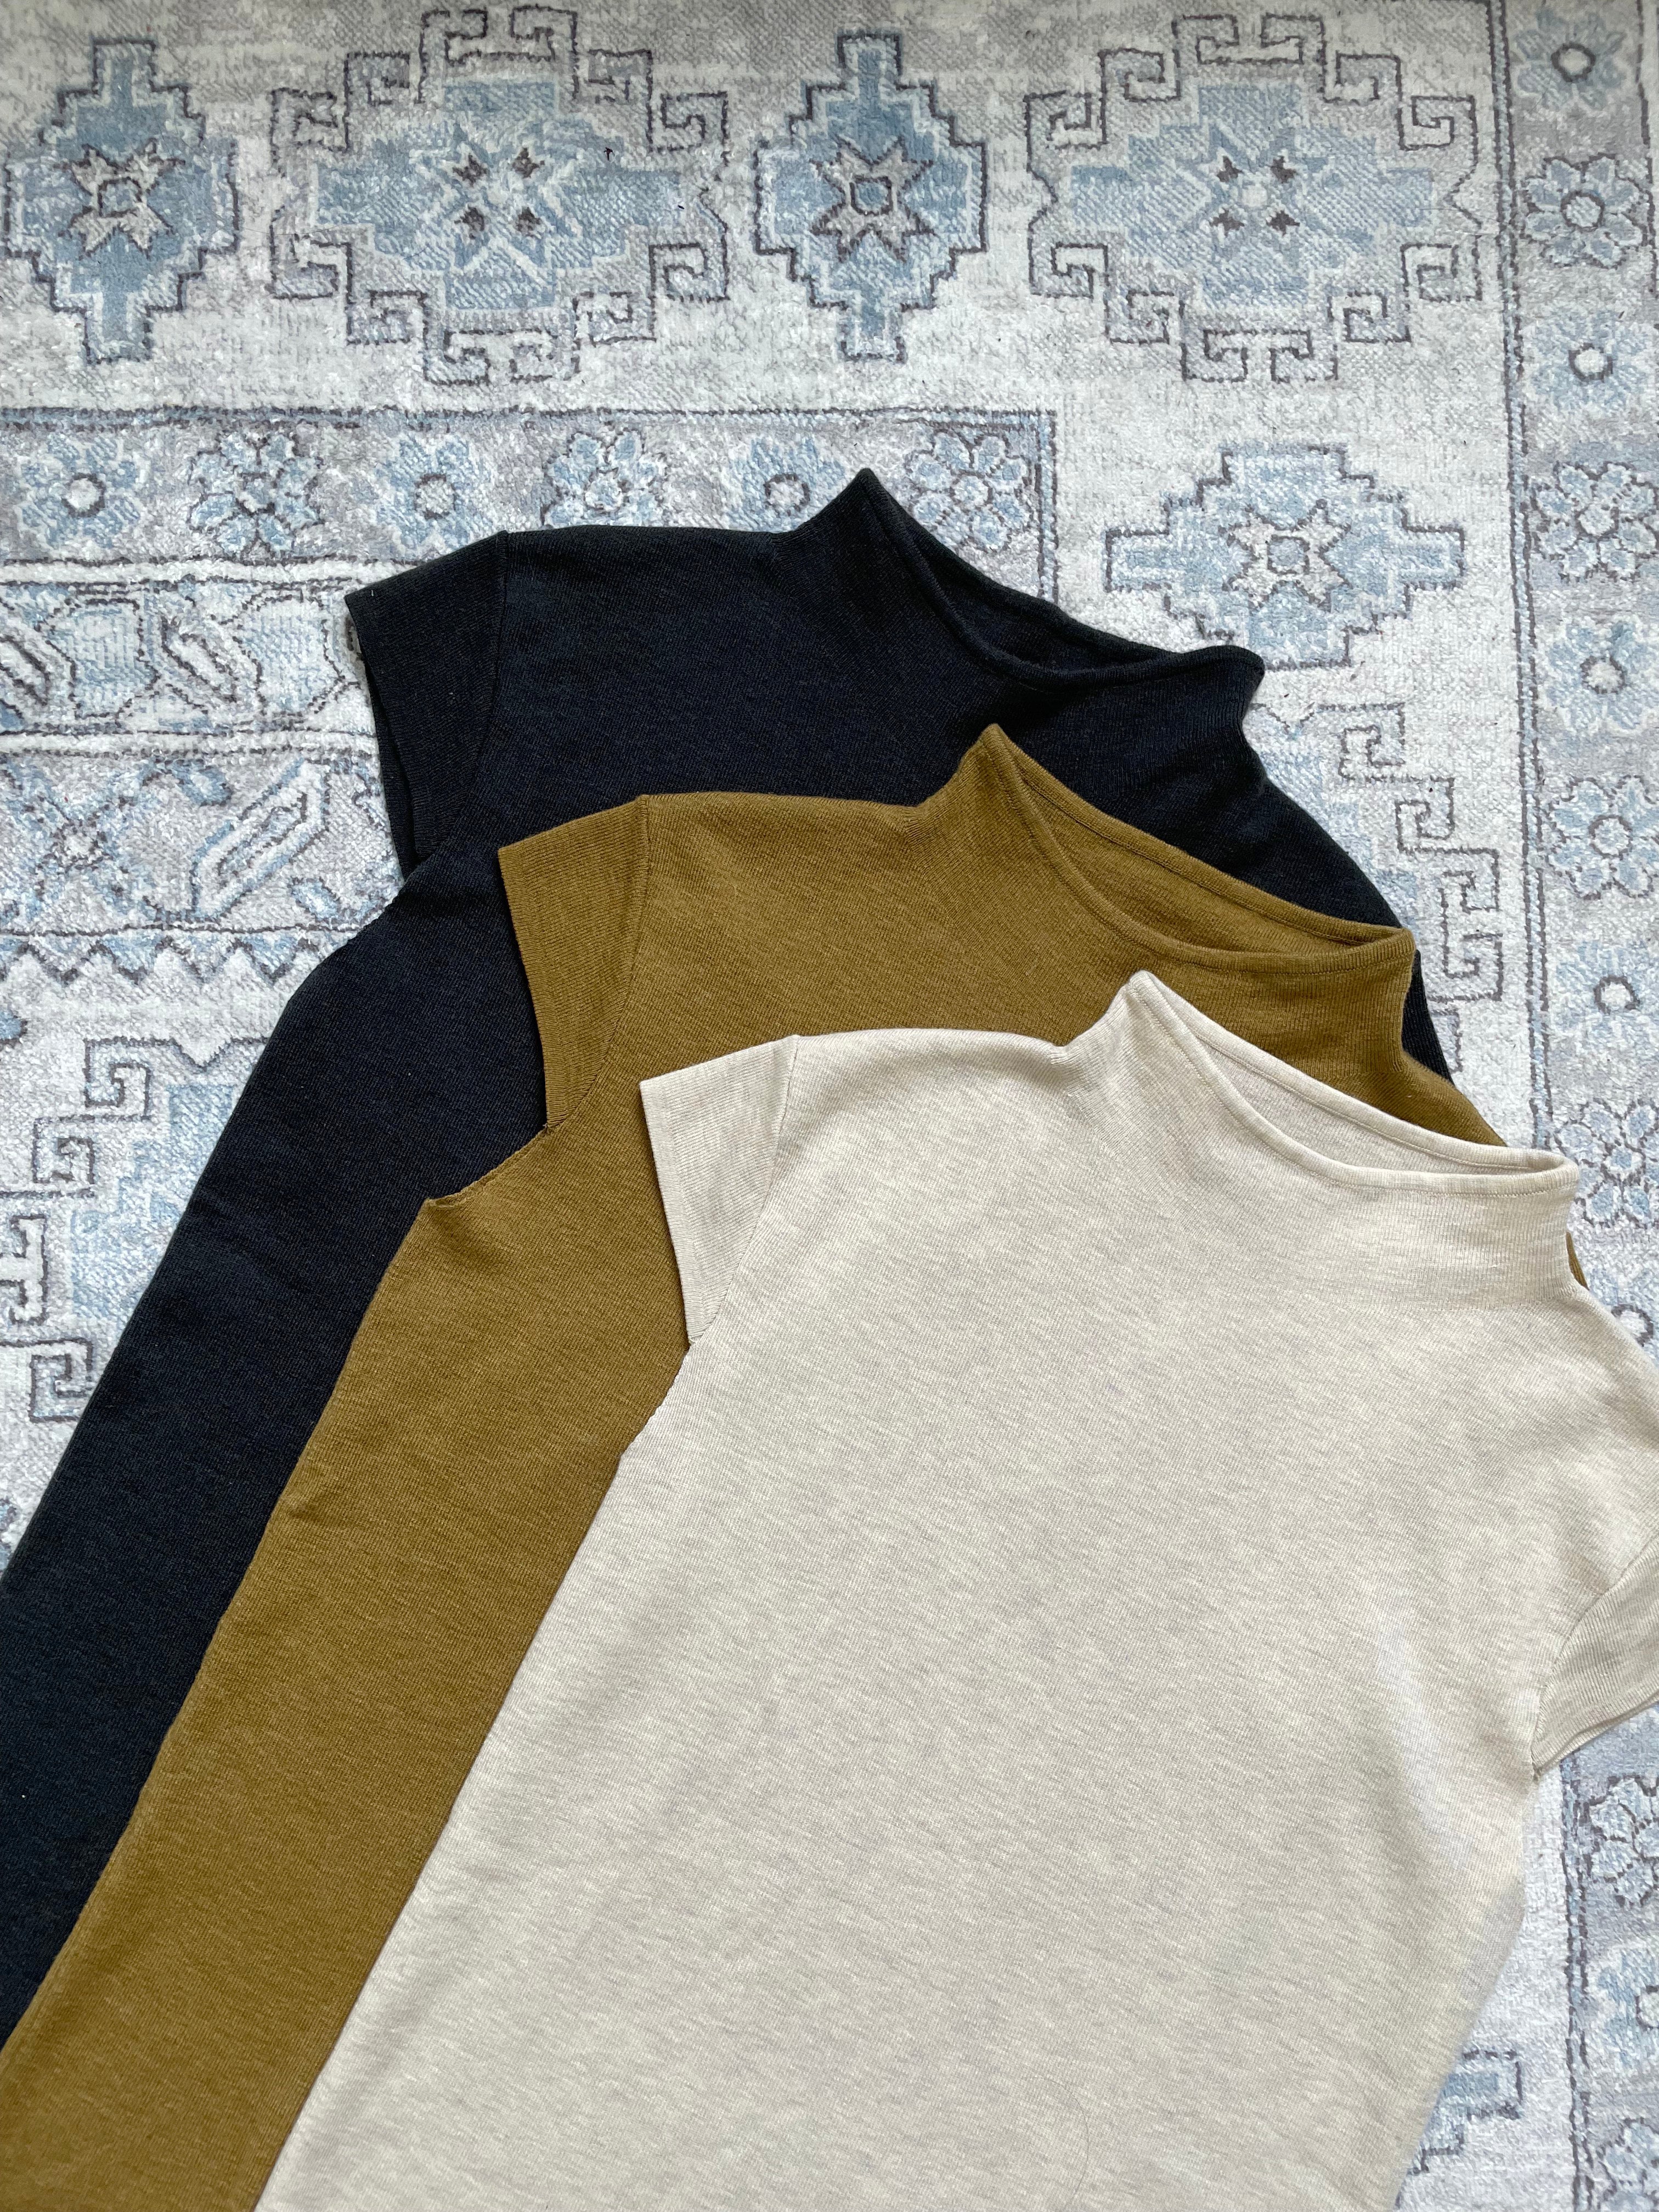 Short-sleeve cashmere merino blended -Grey Top 620 HKD